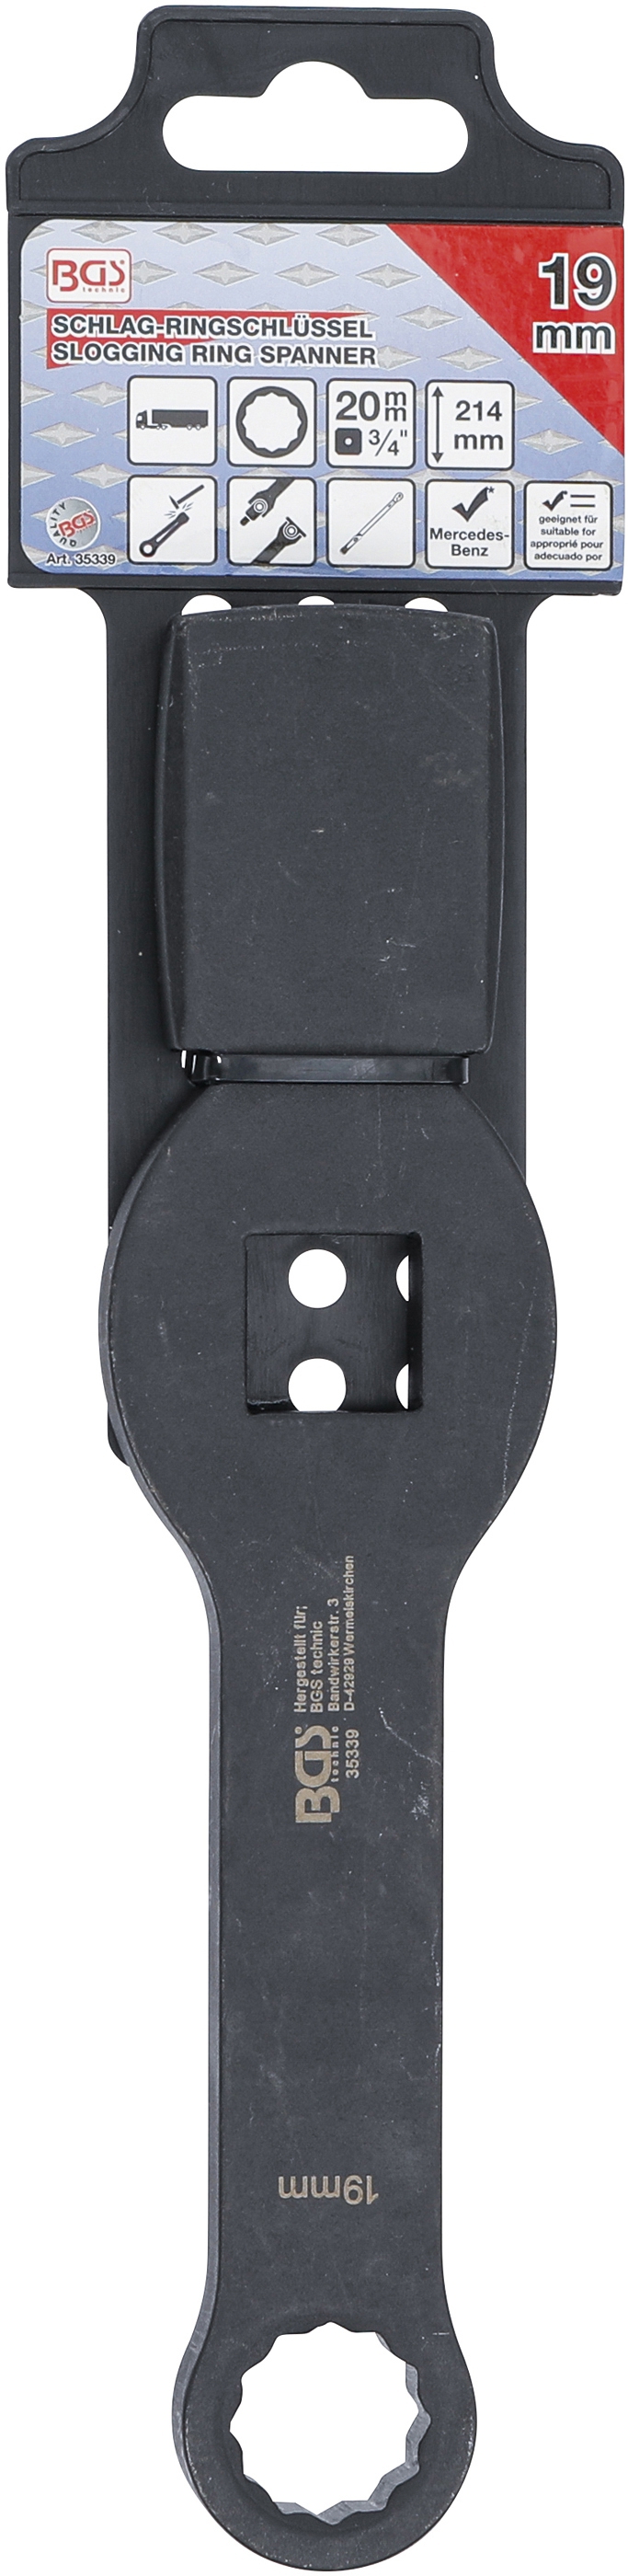 Schlag-Ringschlüssel | Zwölfkant | mit 2 Schlagflächen | SW 19 mm - BGS 35339